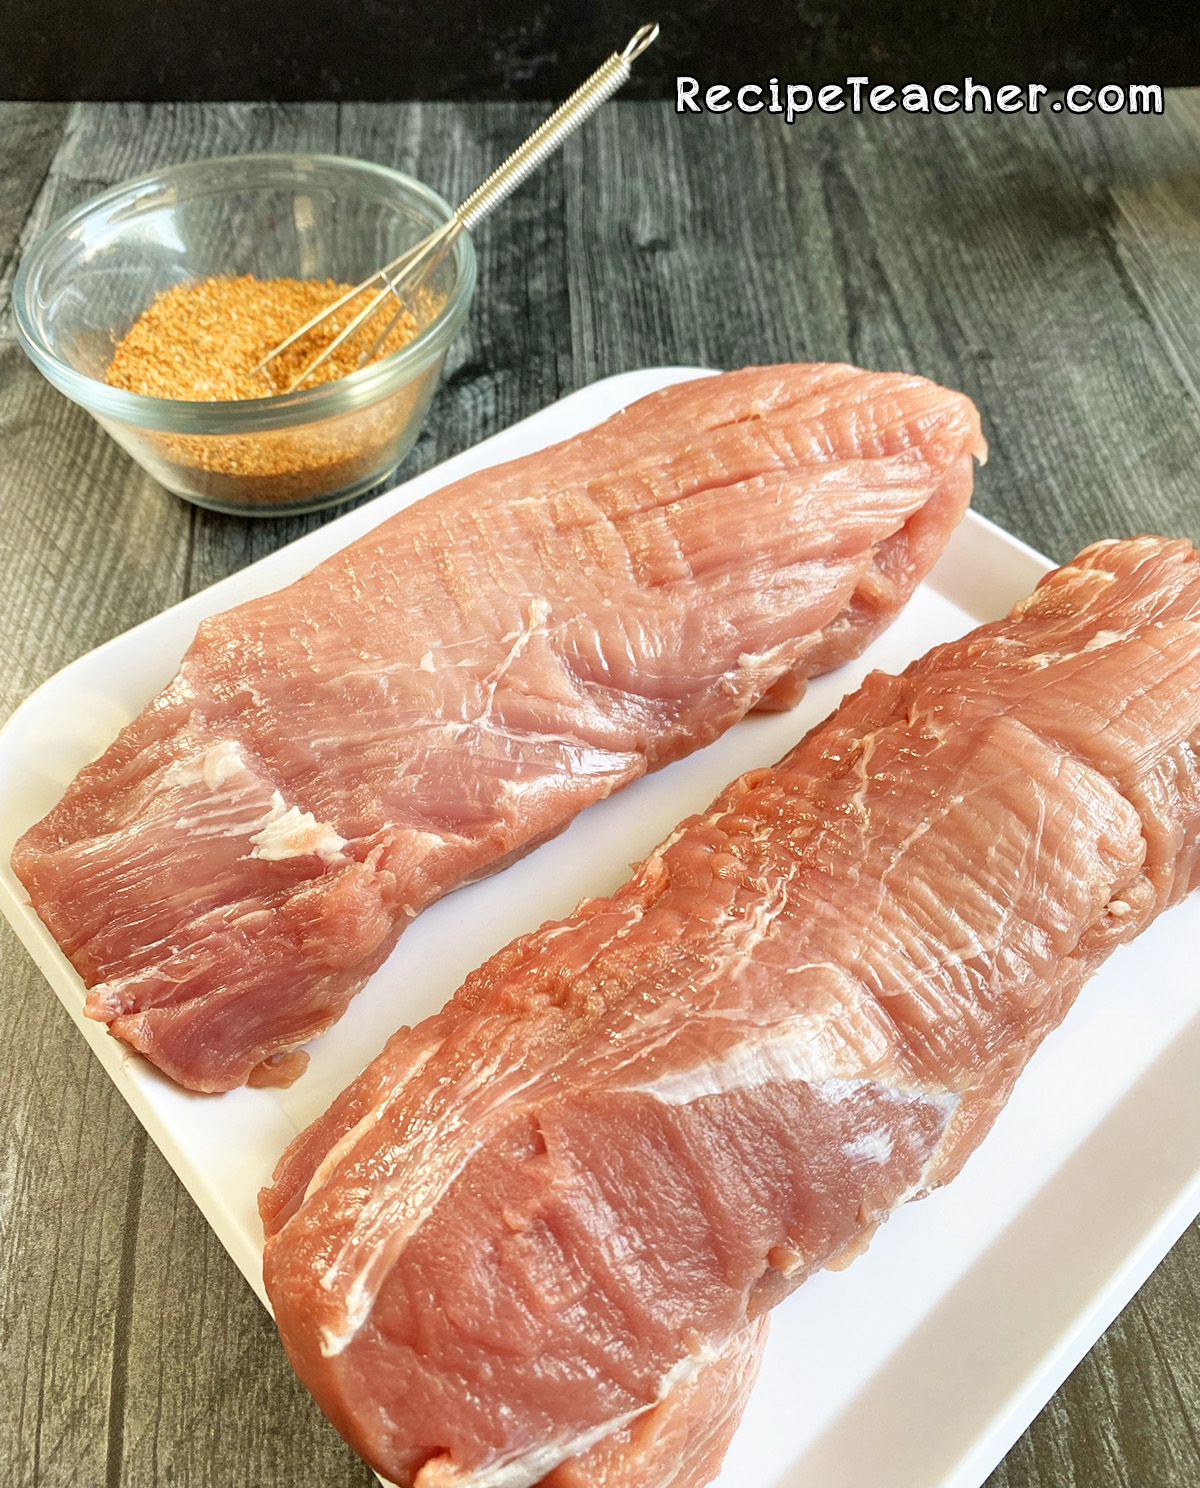 Recipe for grilled pork tenderloin